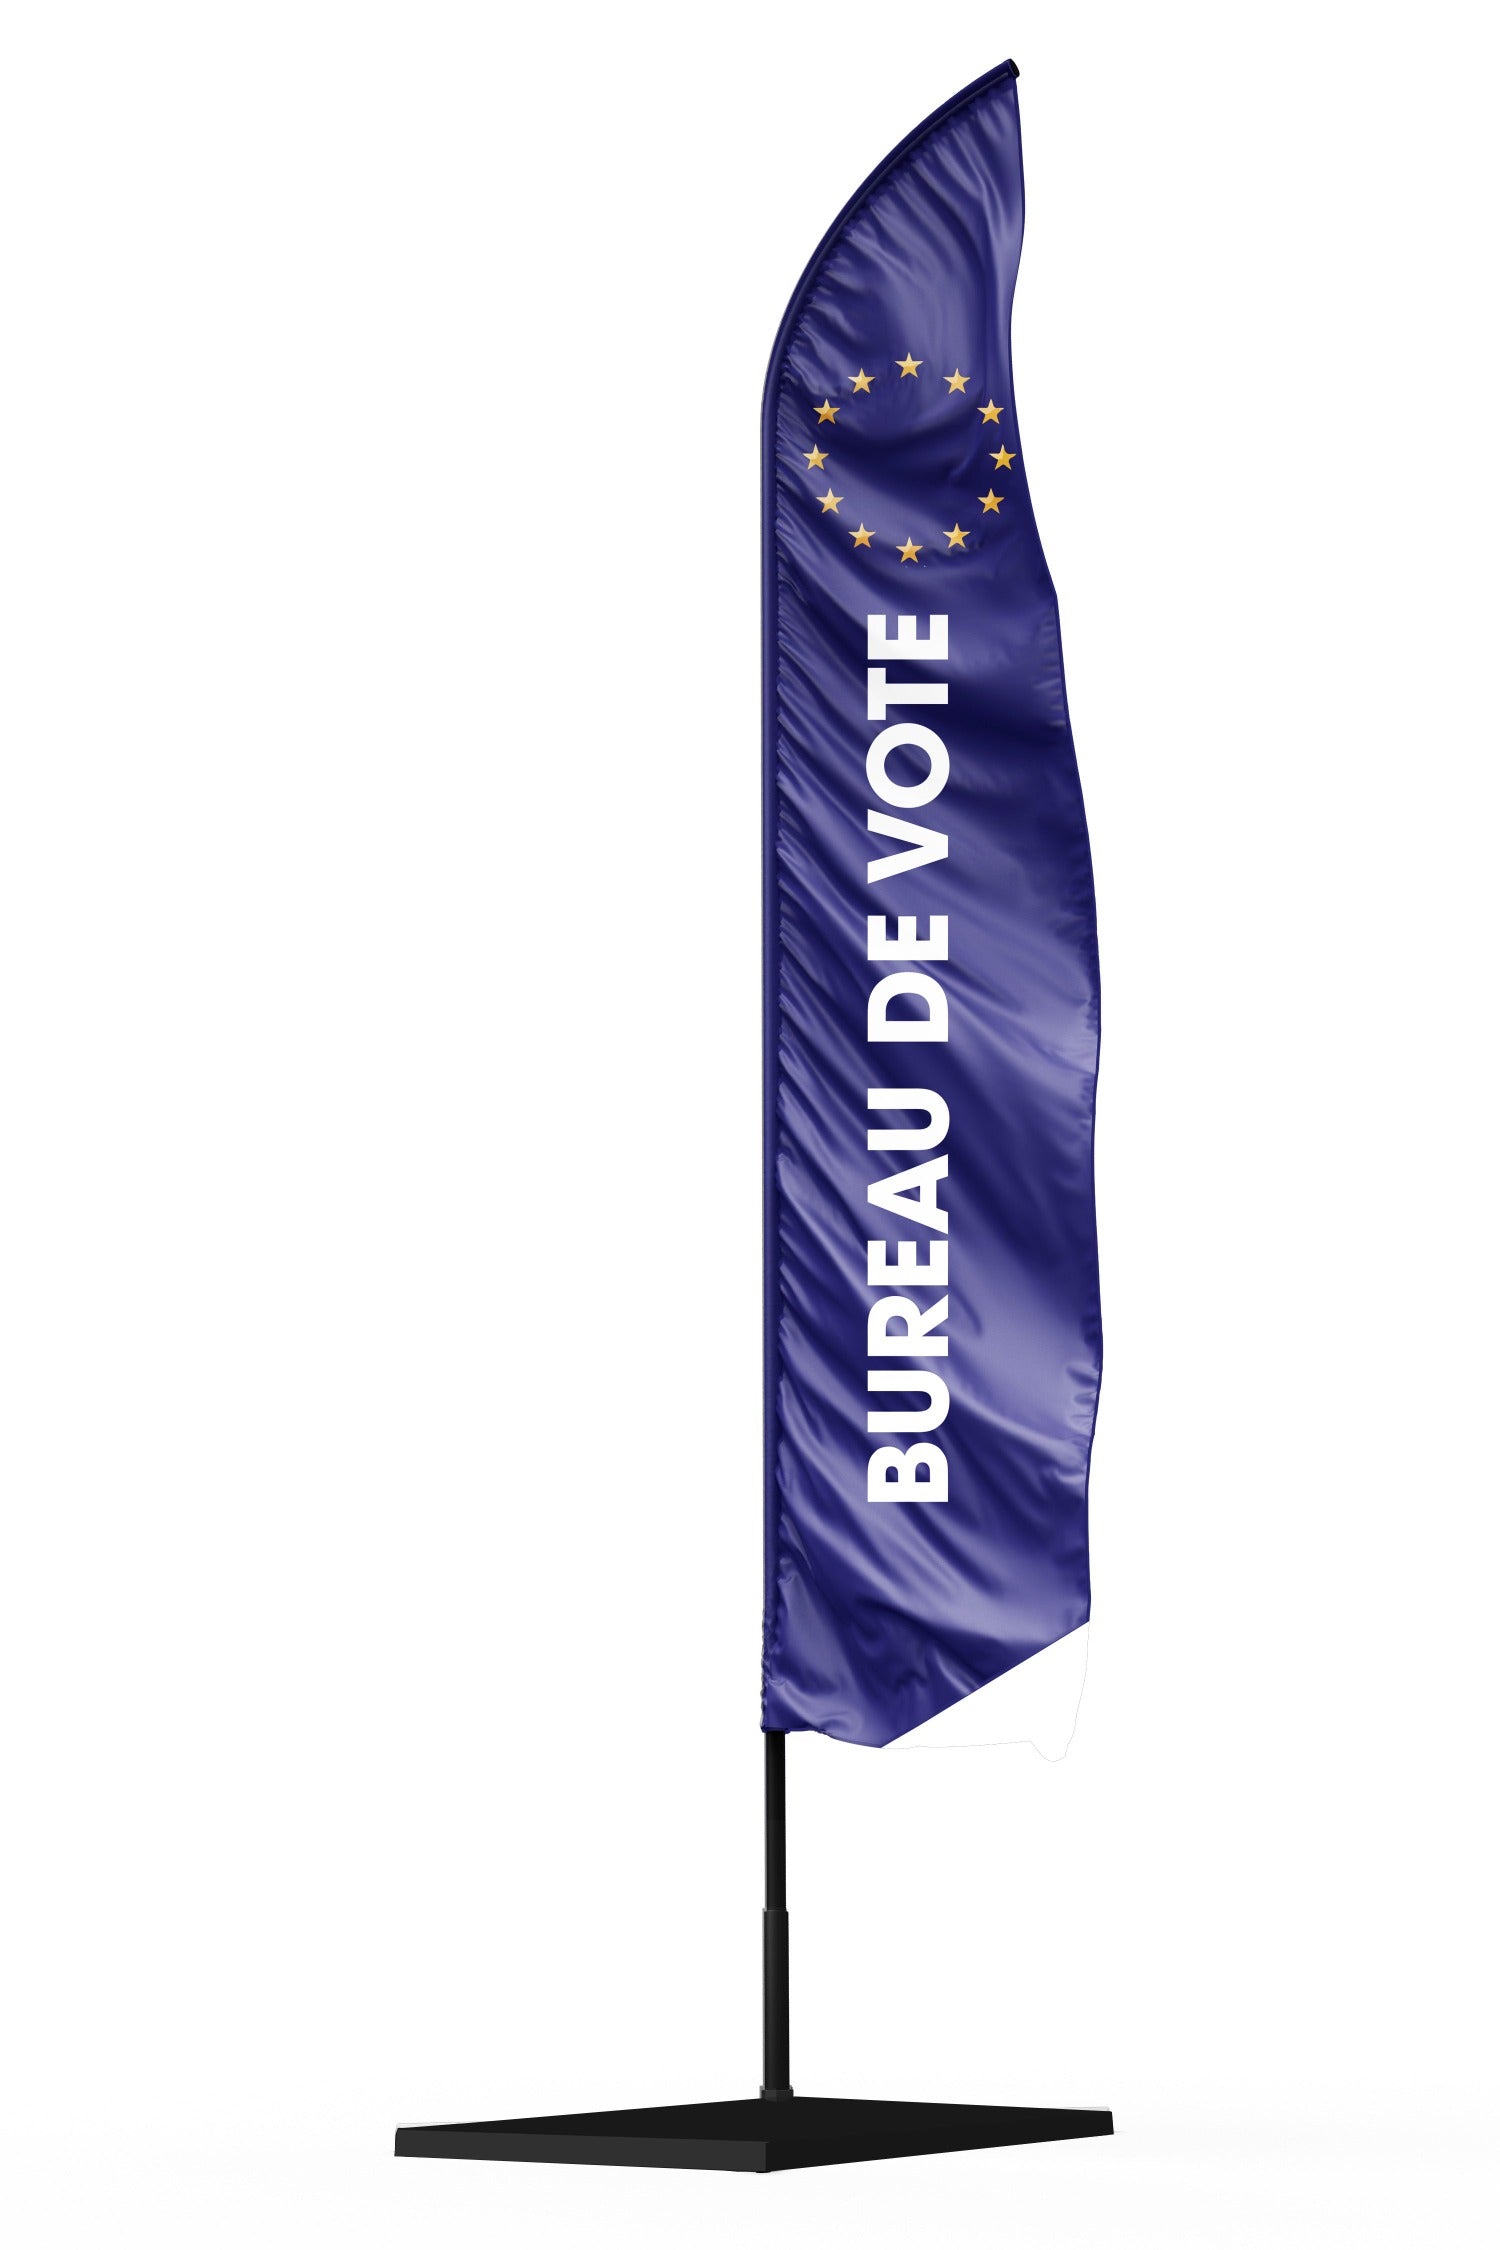 Drapeau signalétique bureau de vote pour élections européennes sur fond bleu avec les étoiles du drapeau européen en haut de la voile.